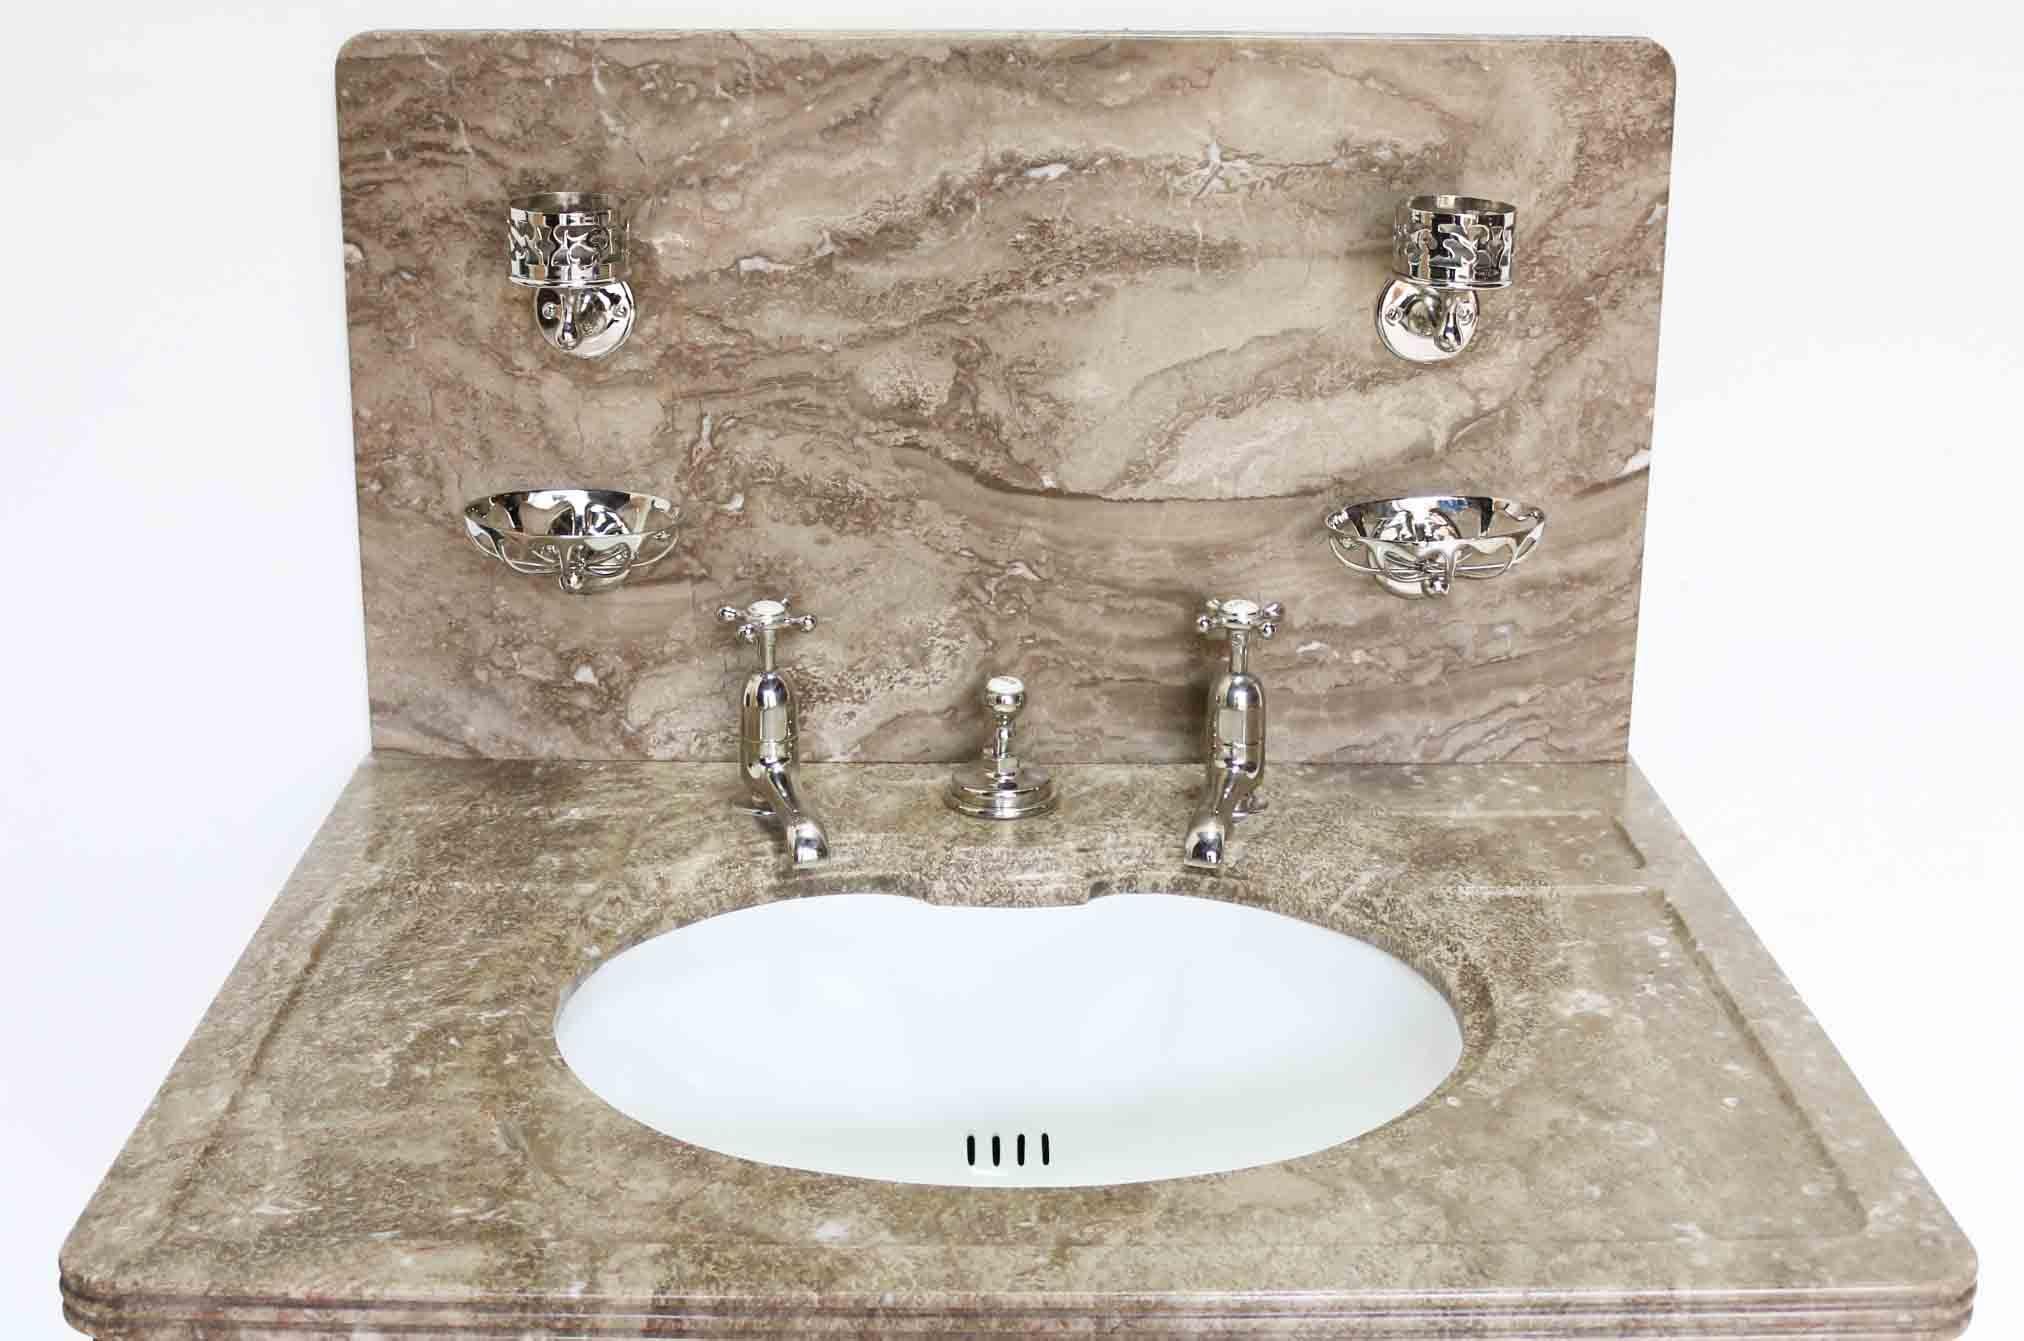 English Antique Bathroom Vanity Suite / Basin